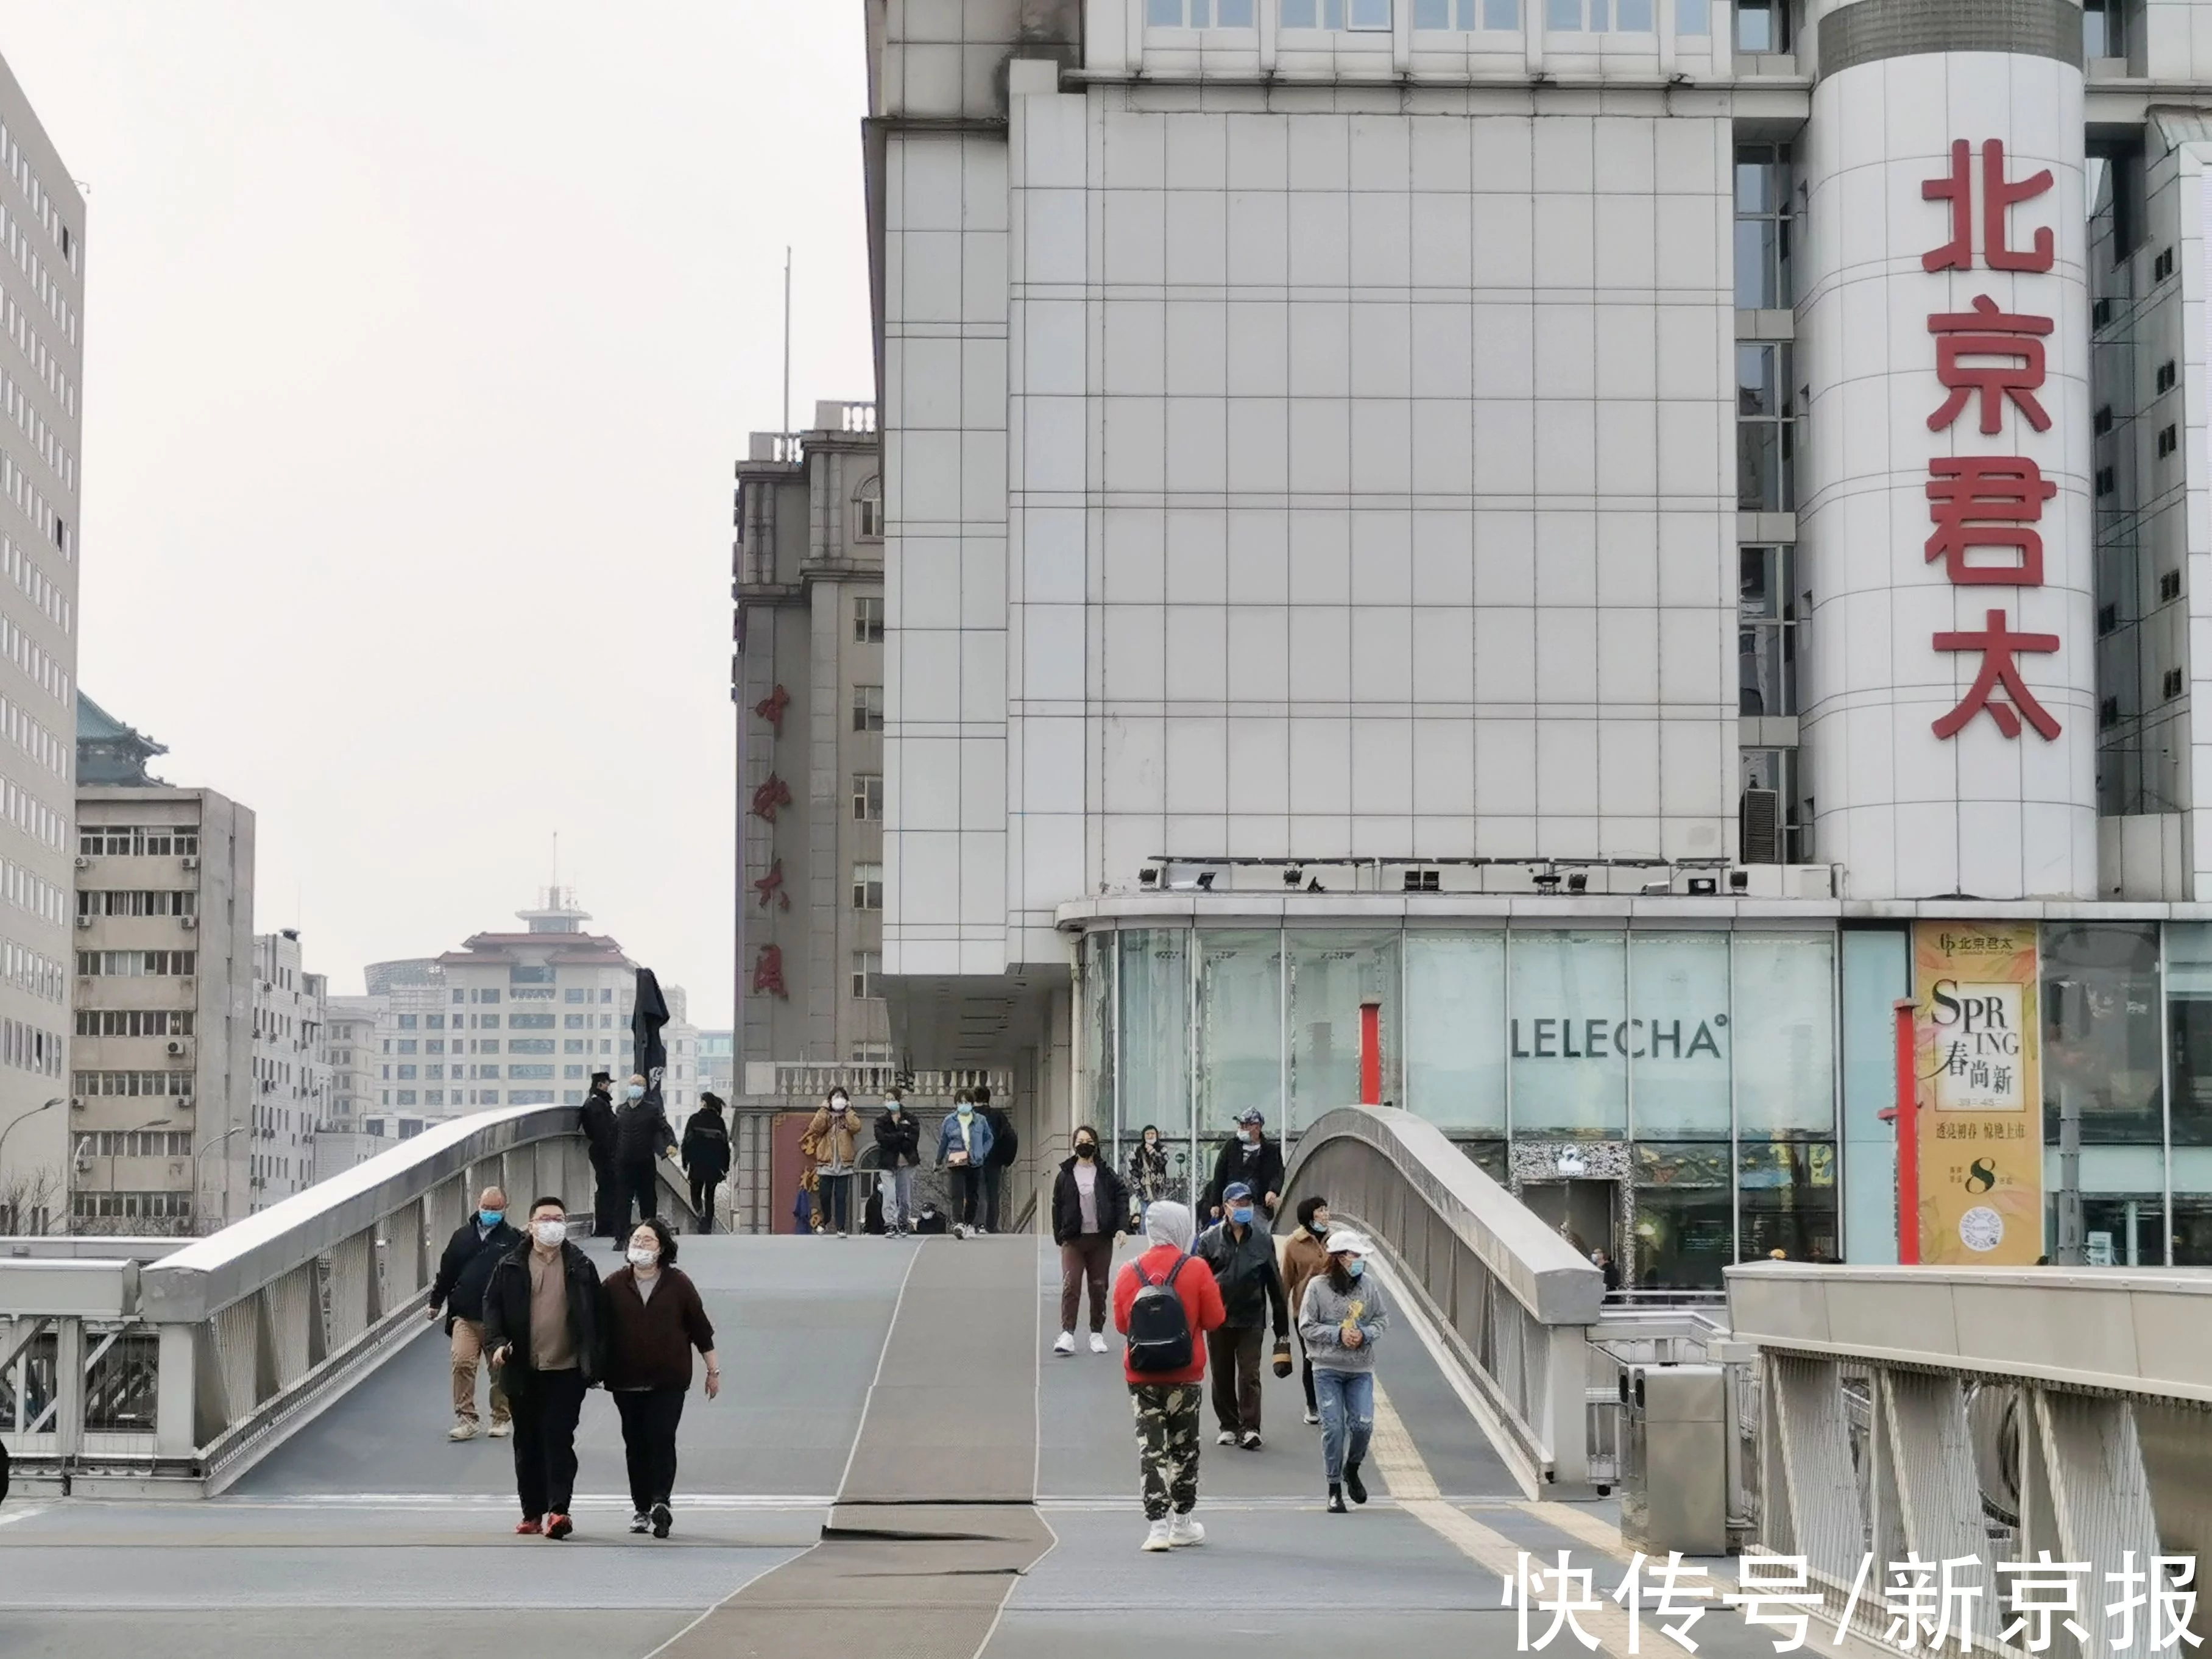 发力首店经济、突出潮流印象,北京西单商圈公布改造升级方案